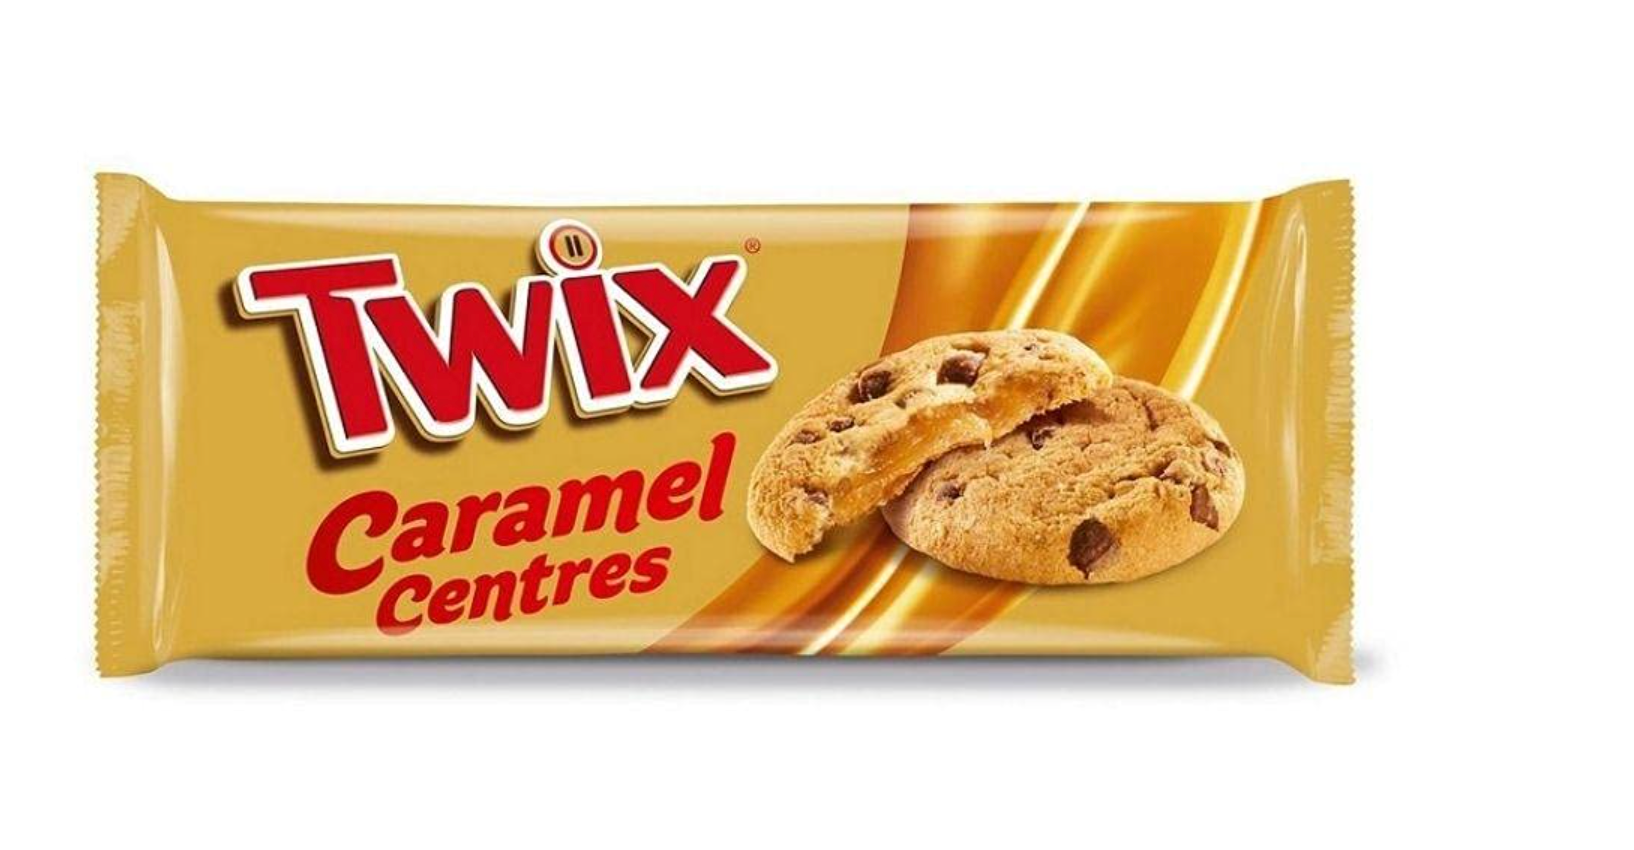 Twix Caramel Centres Cookies UK